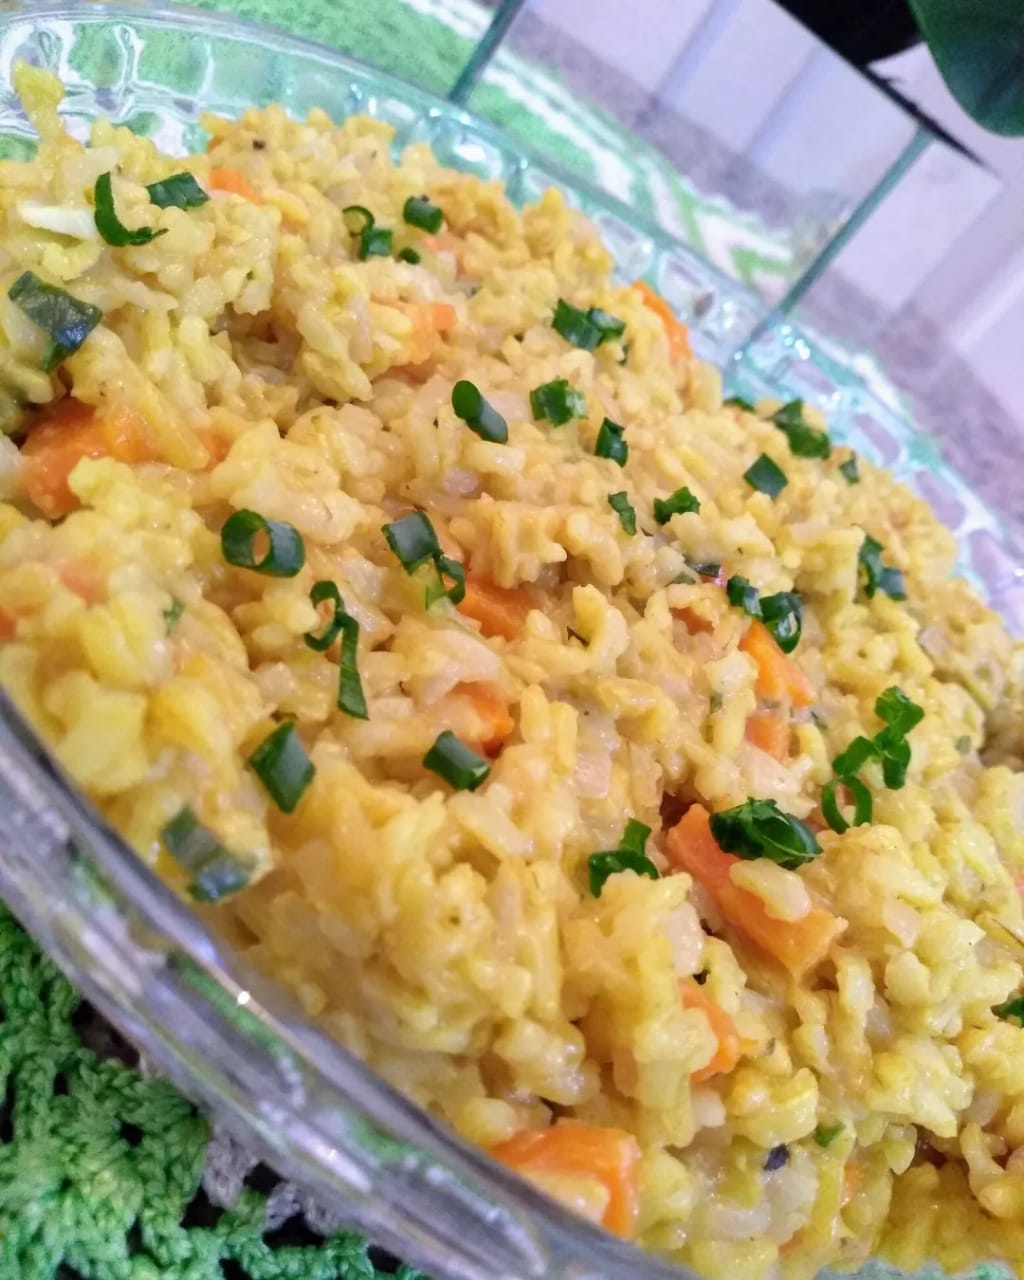 arroz integral com cenoura na panela de pressao